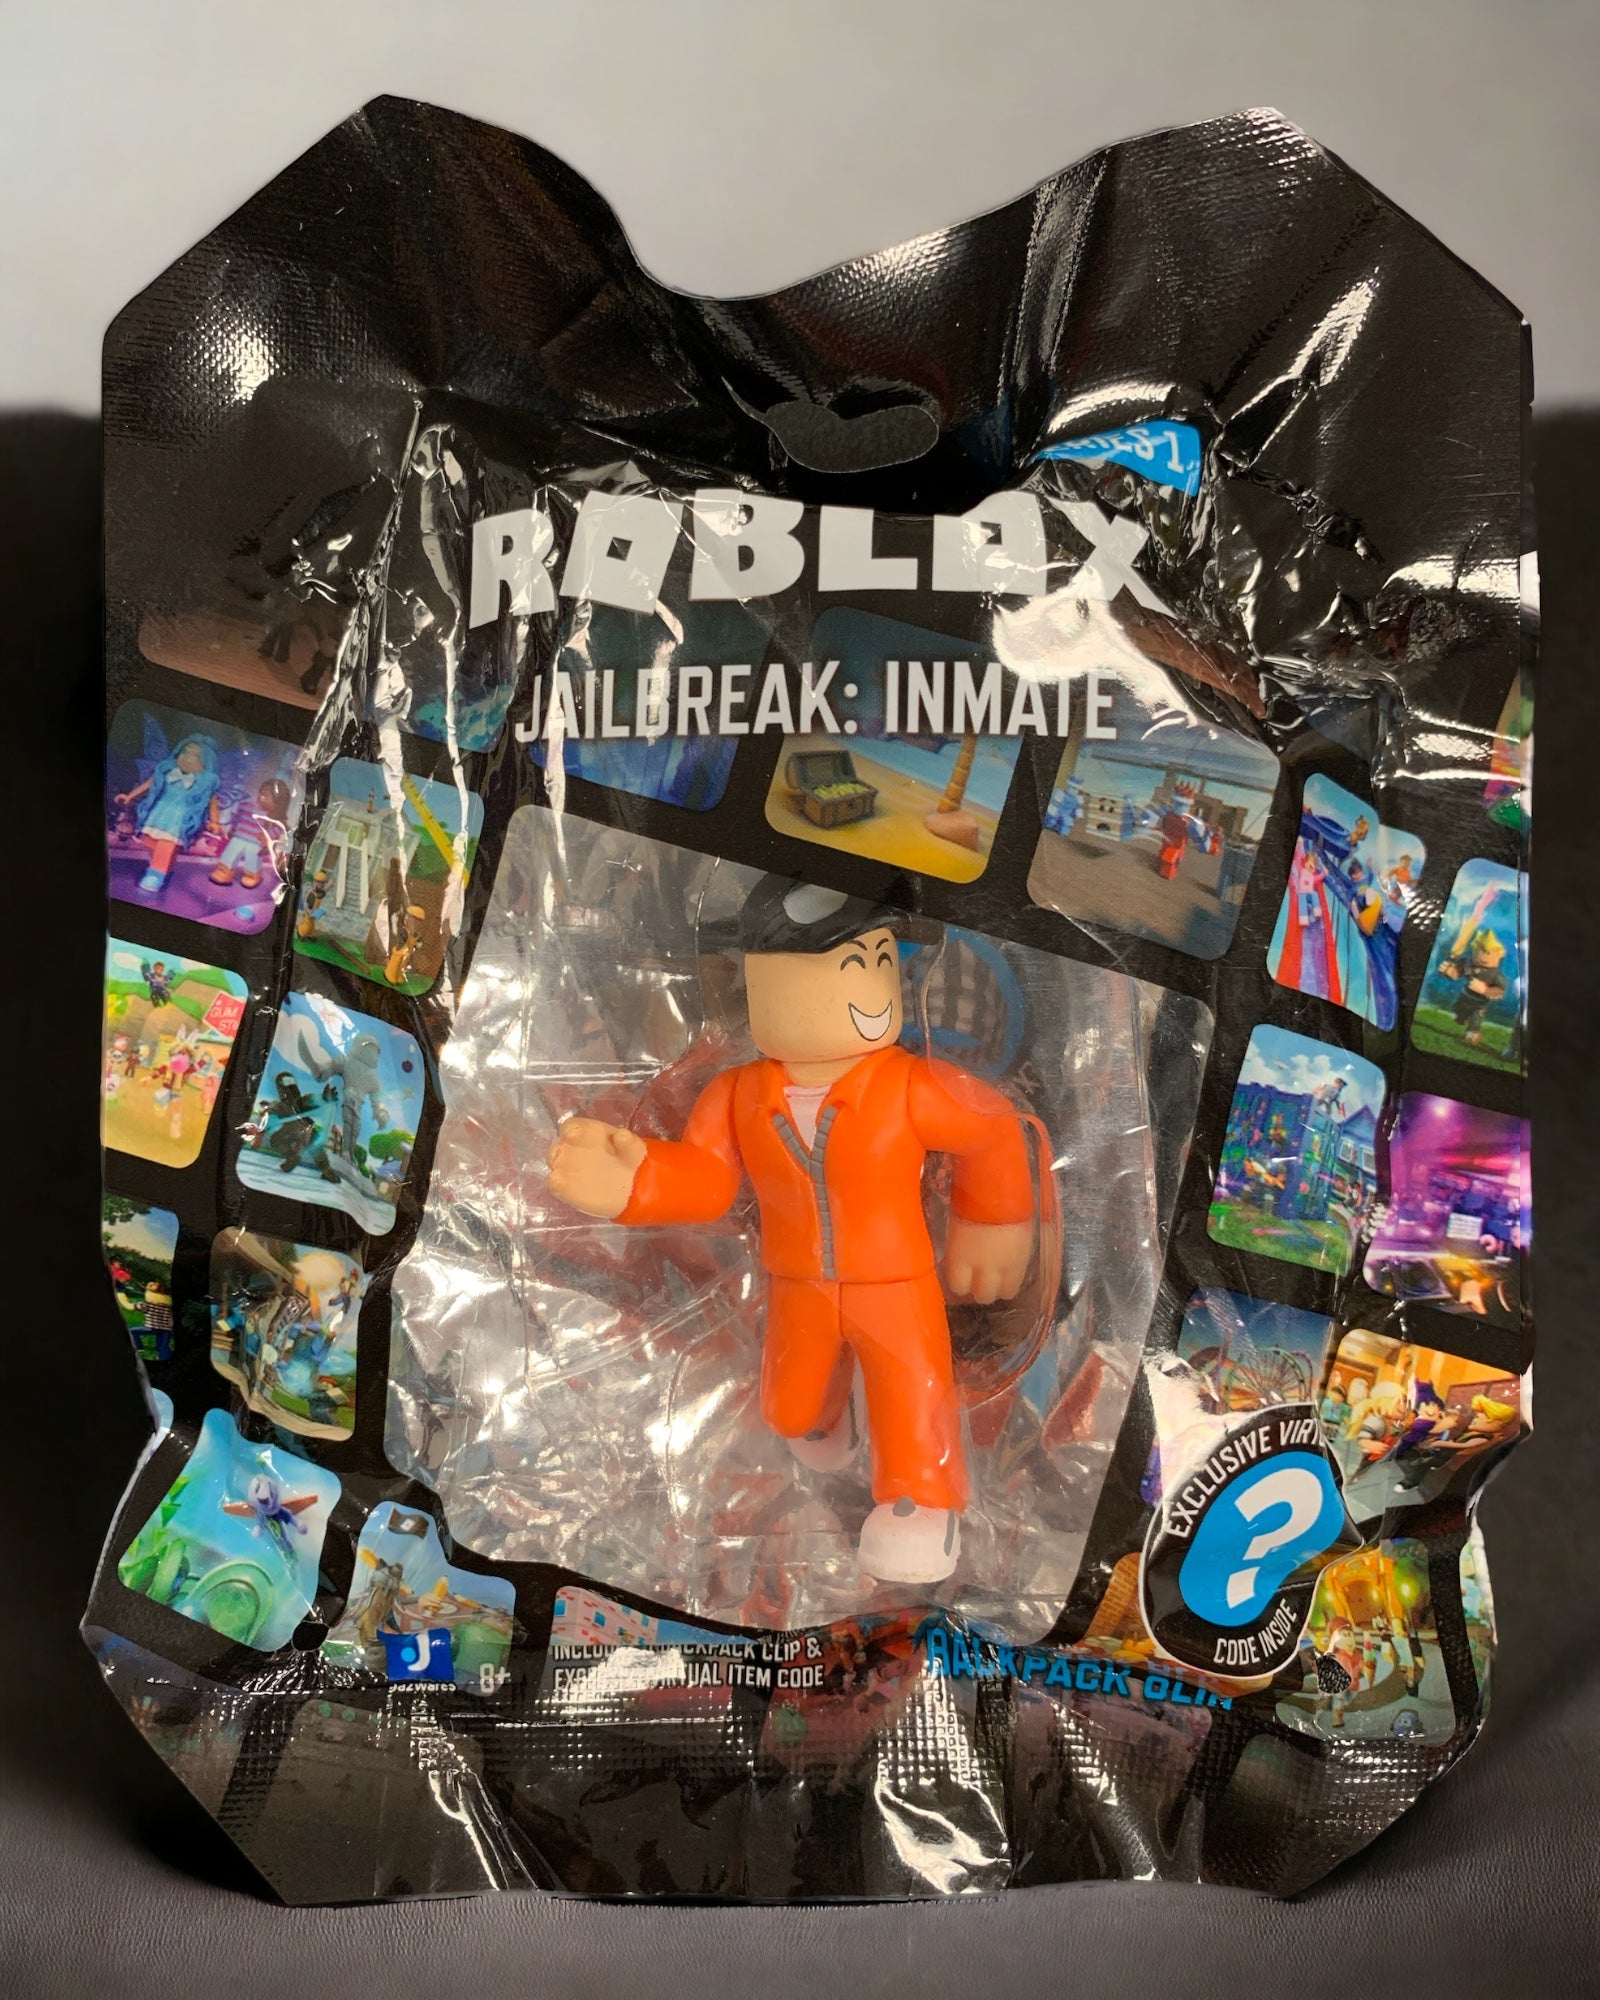 Roblox Series 1 Backpack Hangers - Jail Break : Inmate - Includes mystery virtual item